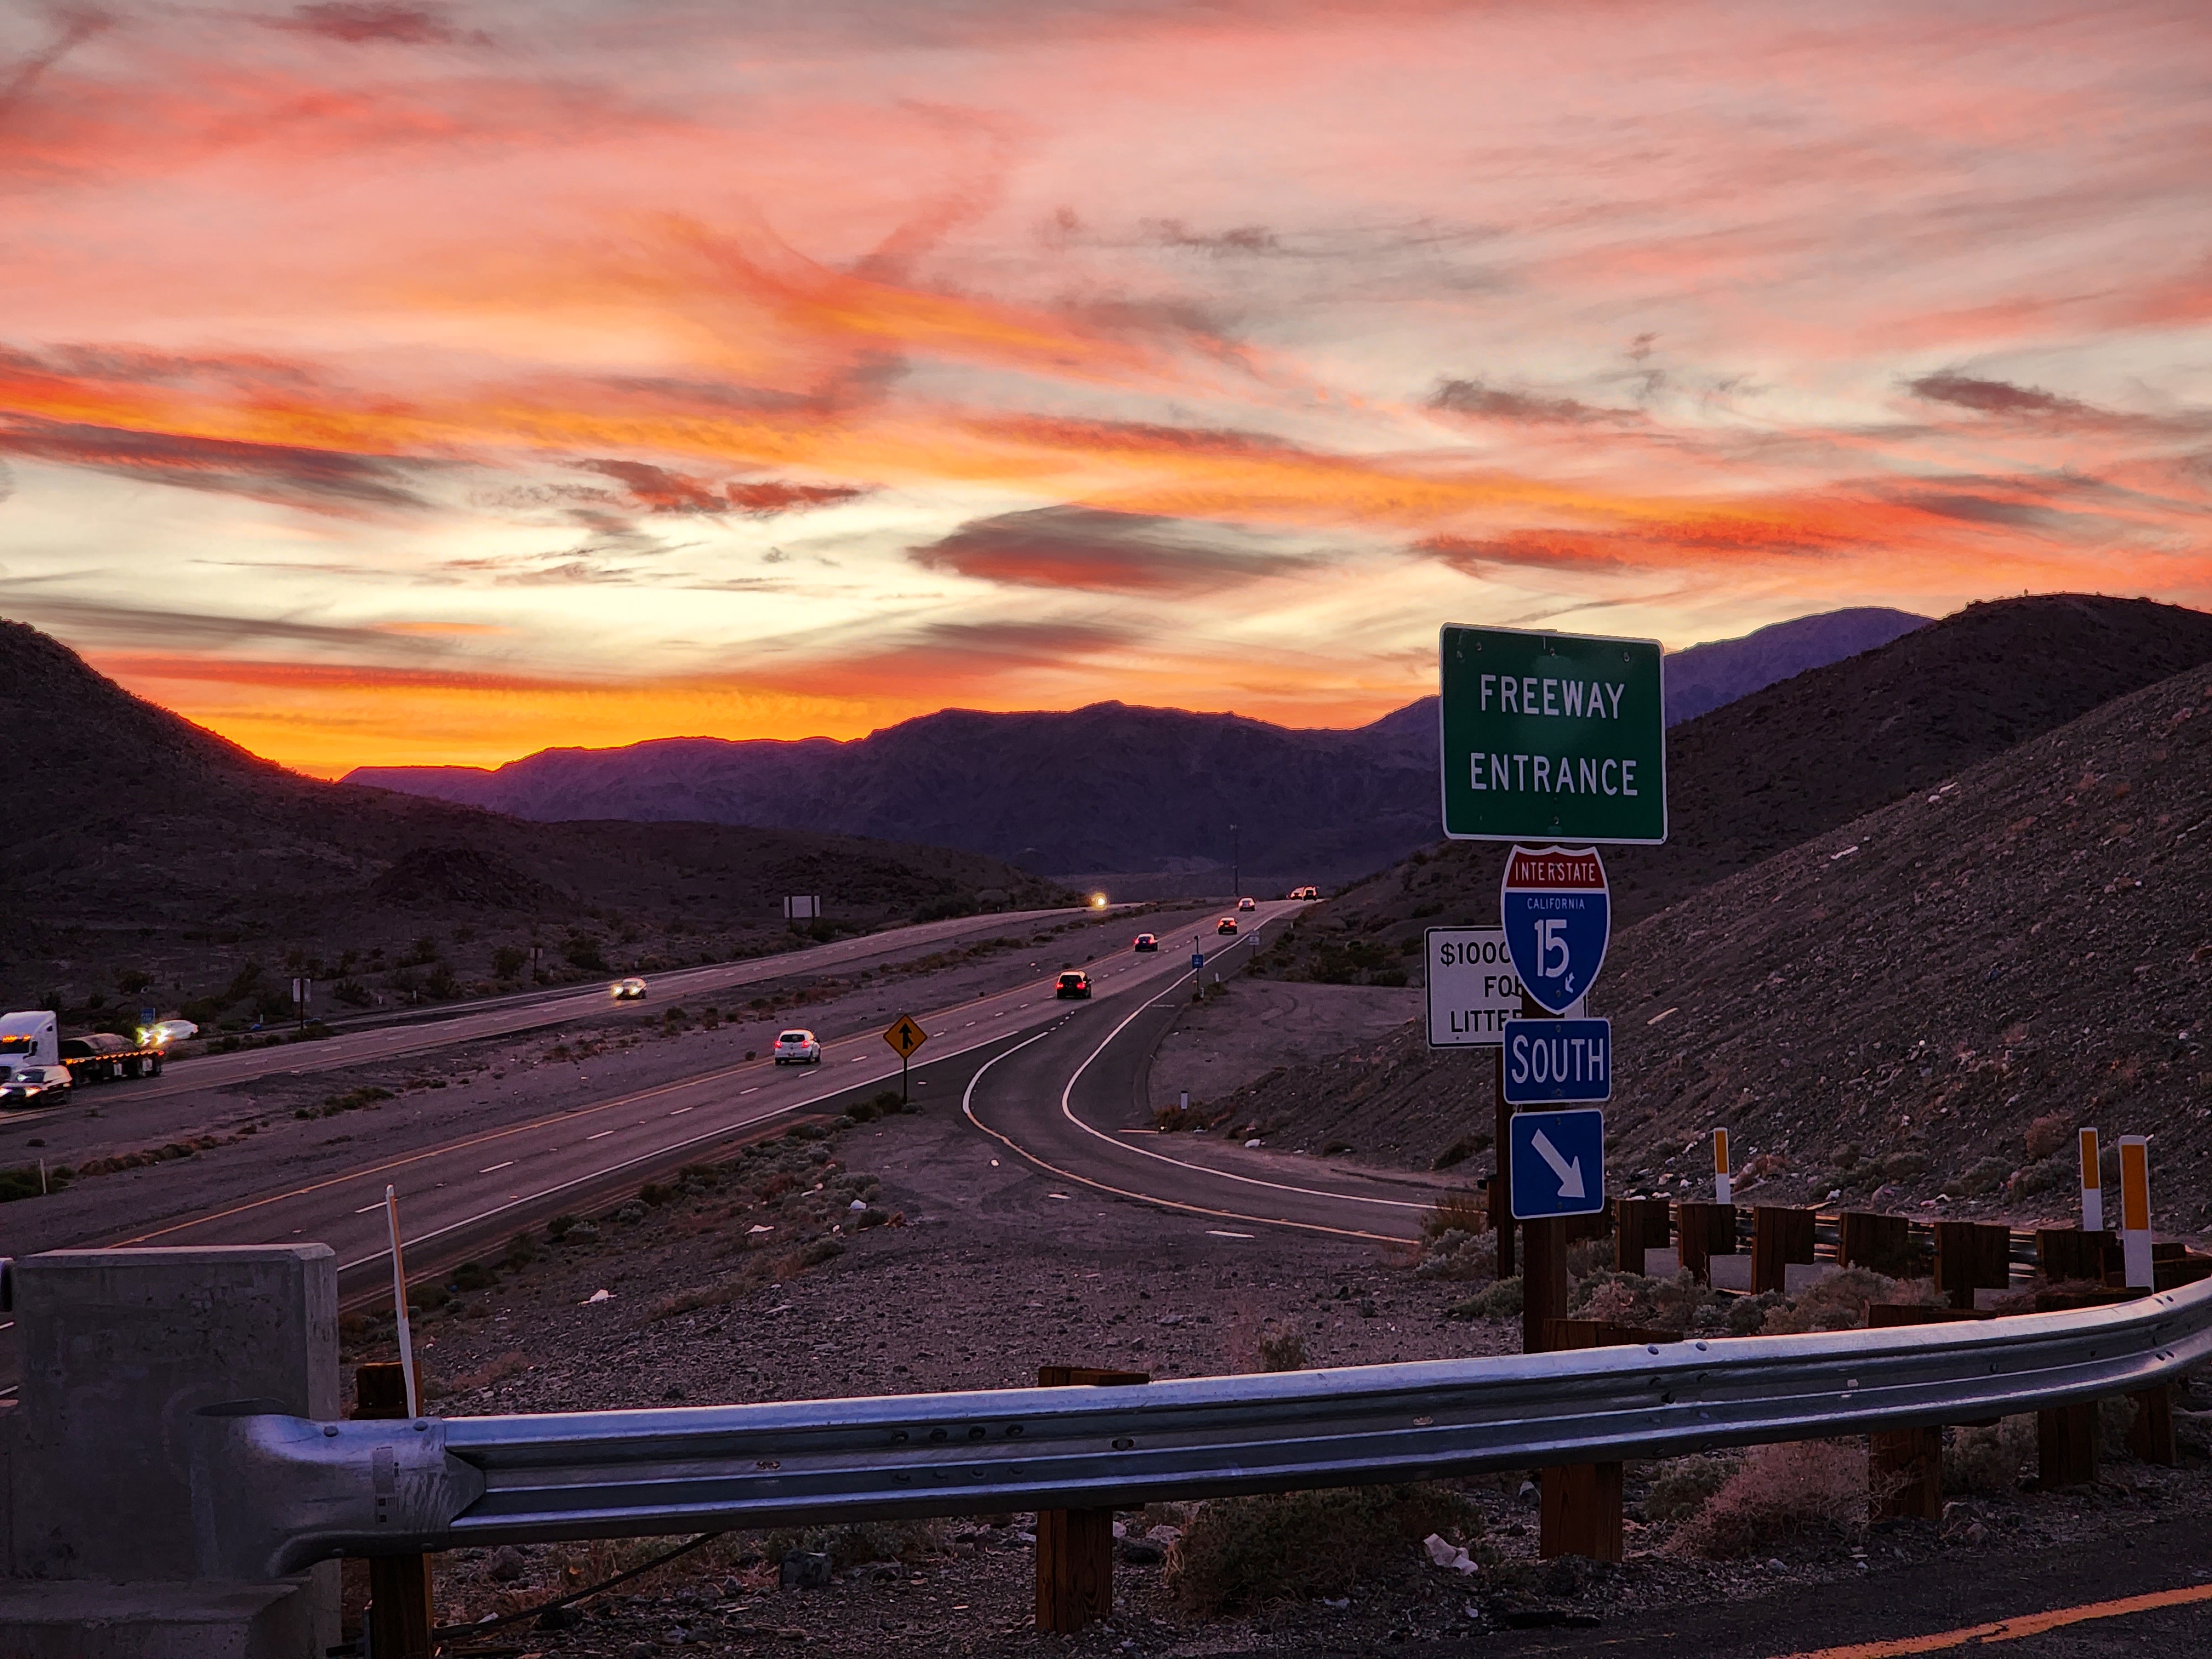 Watch “Fuji X-H2s Desert Sunset Timelapse – Mojave Desert, CA” on YouTube